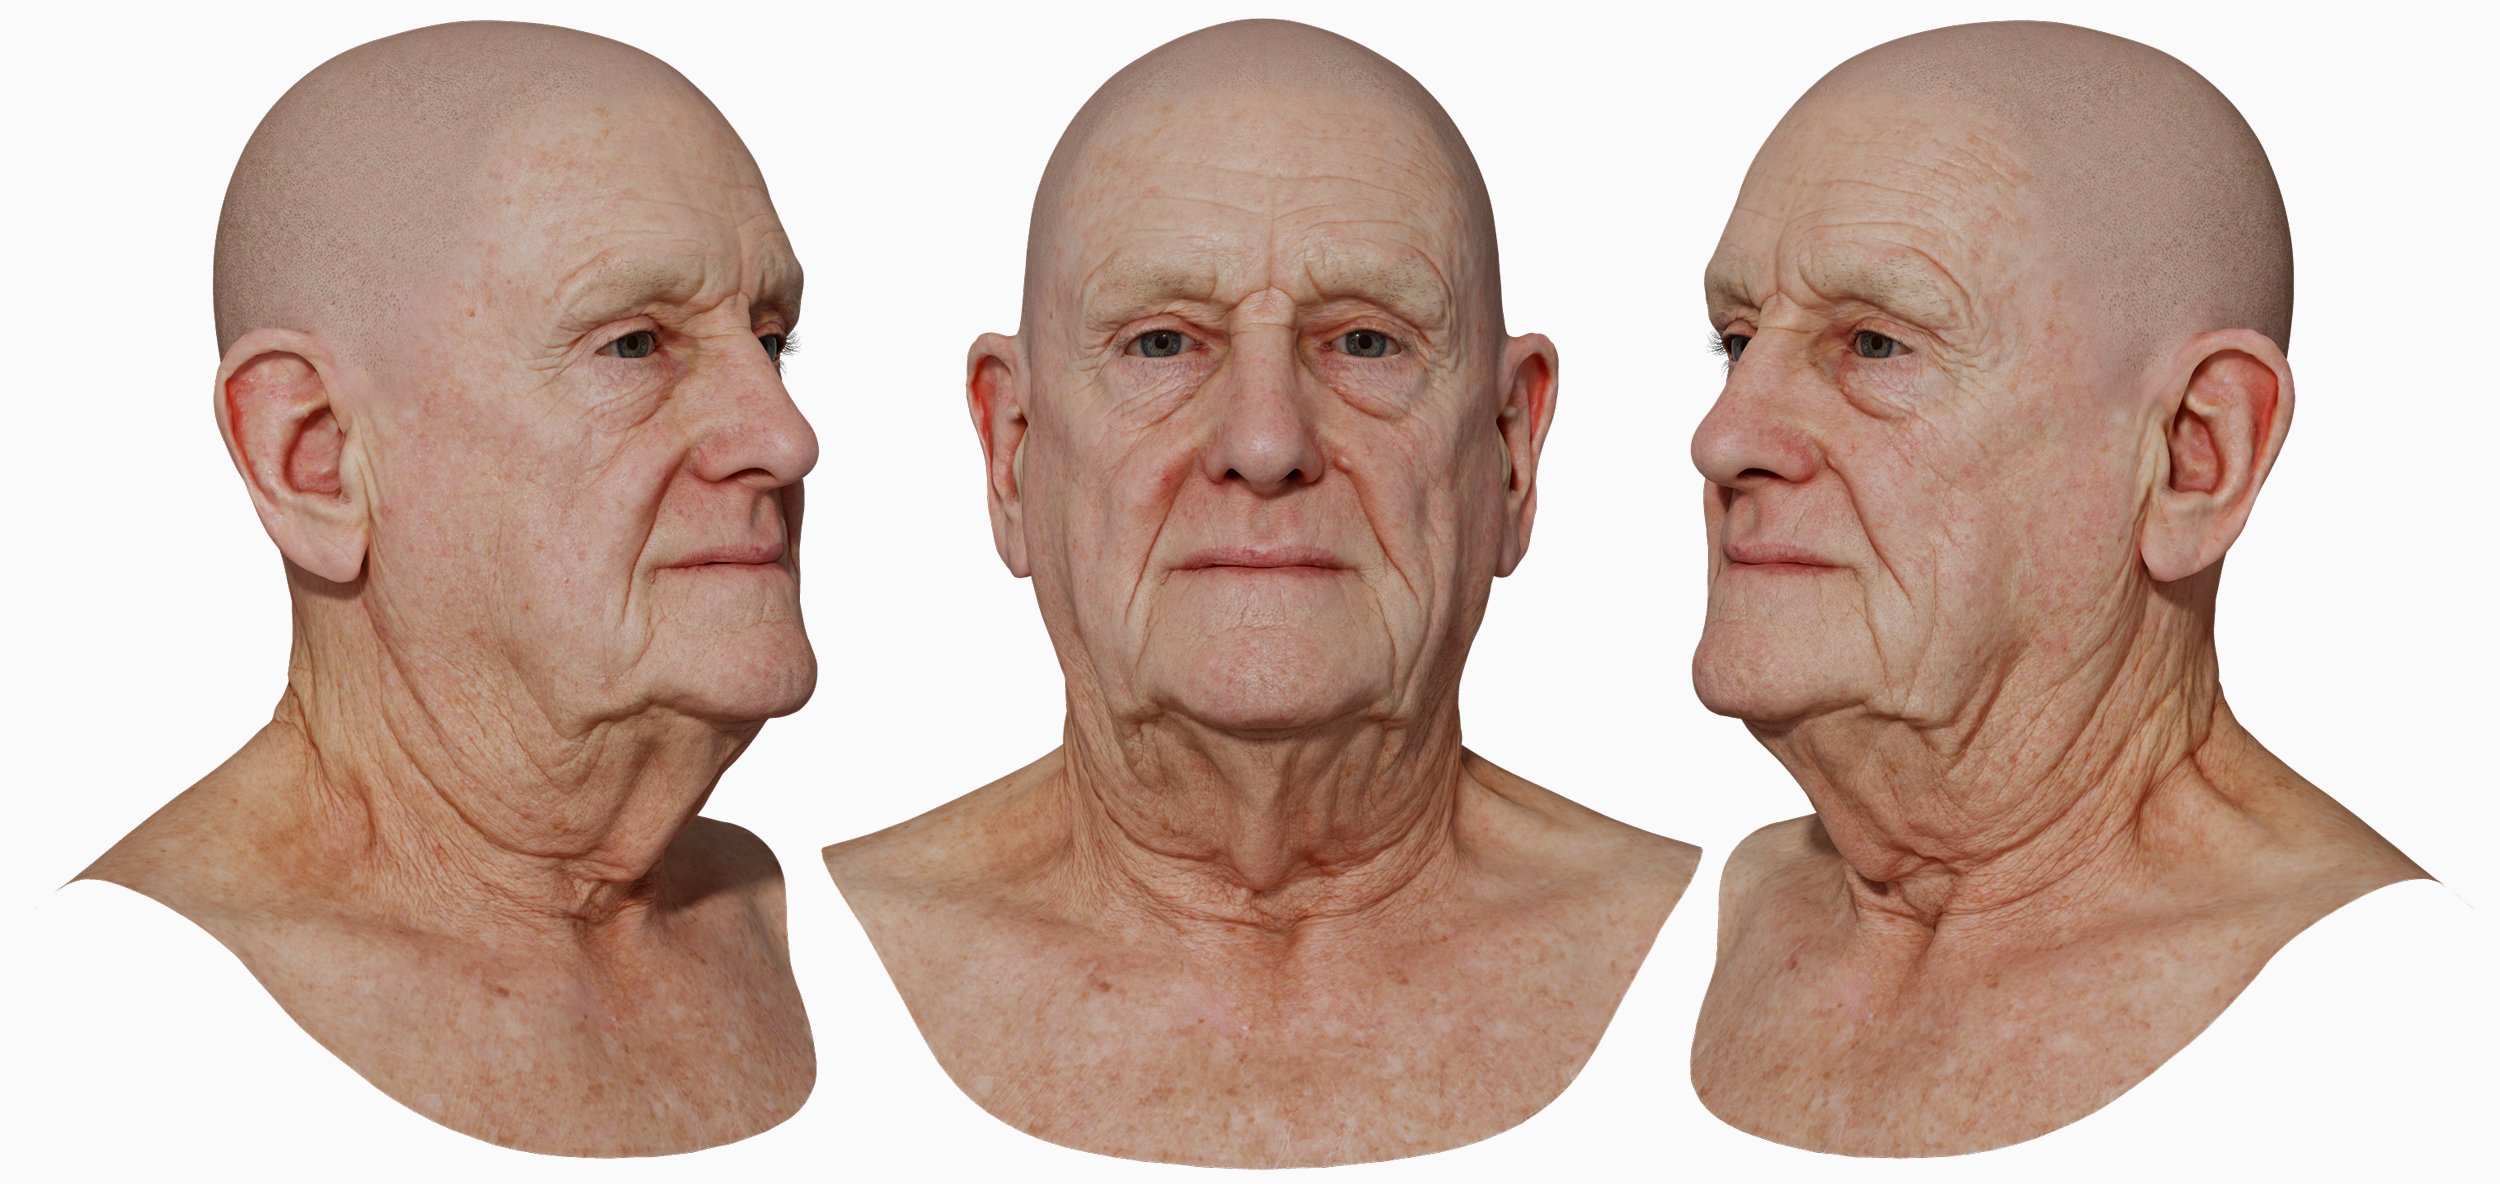 Male 3D Head model download